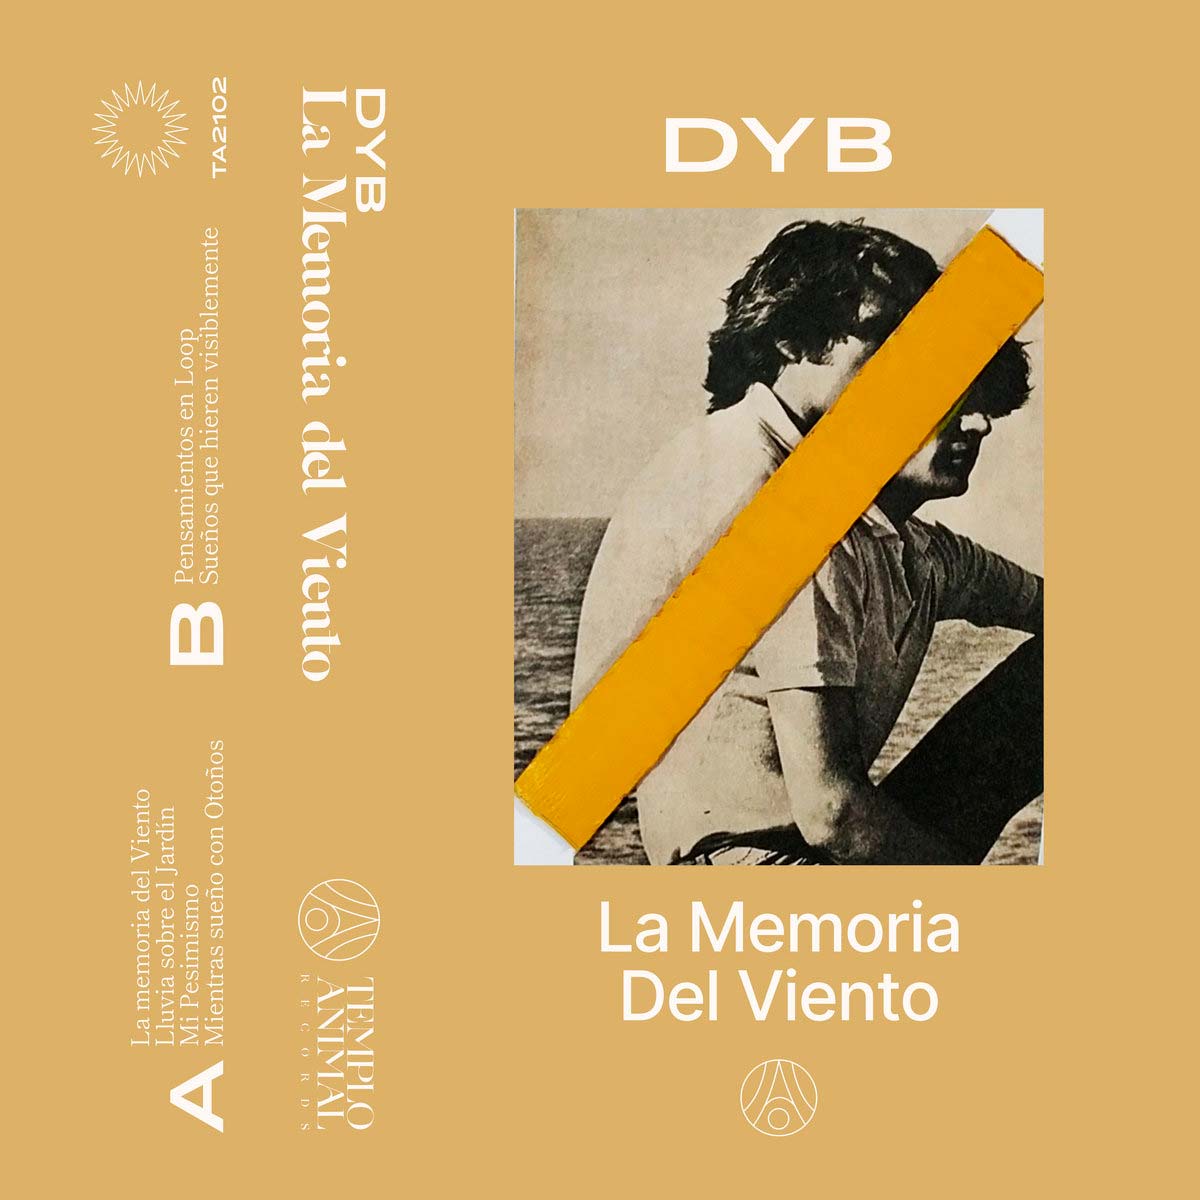 dyb, la memoria del viento